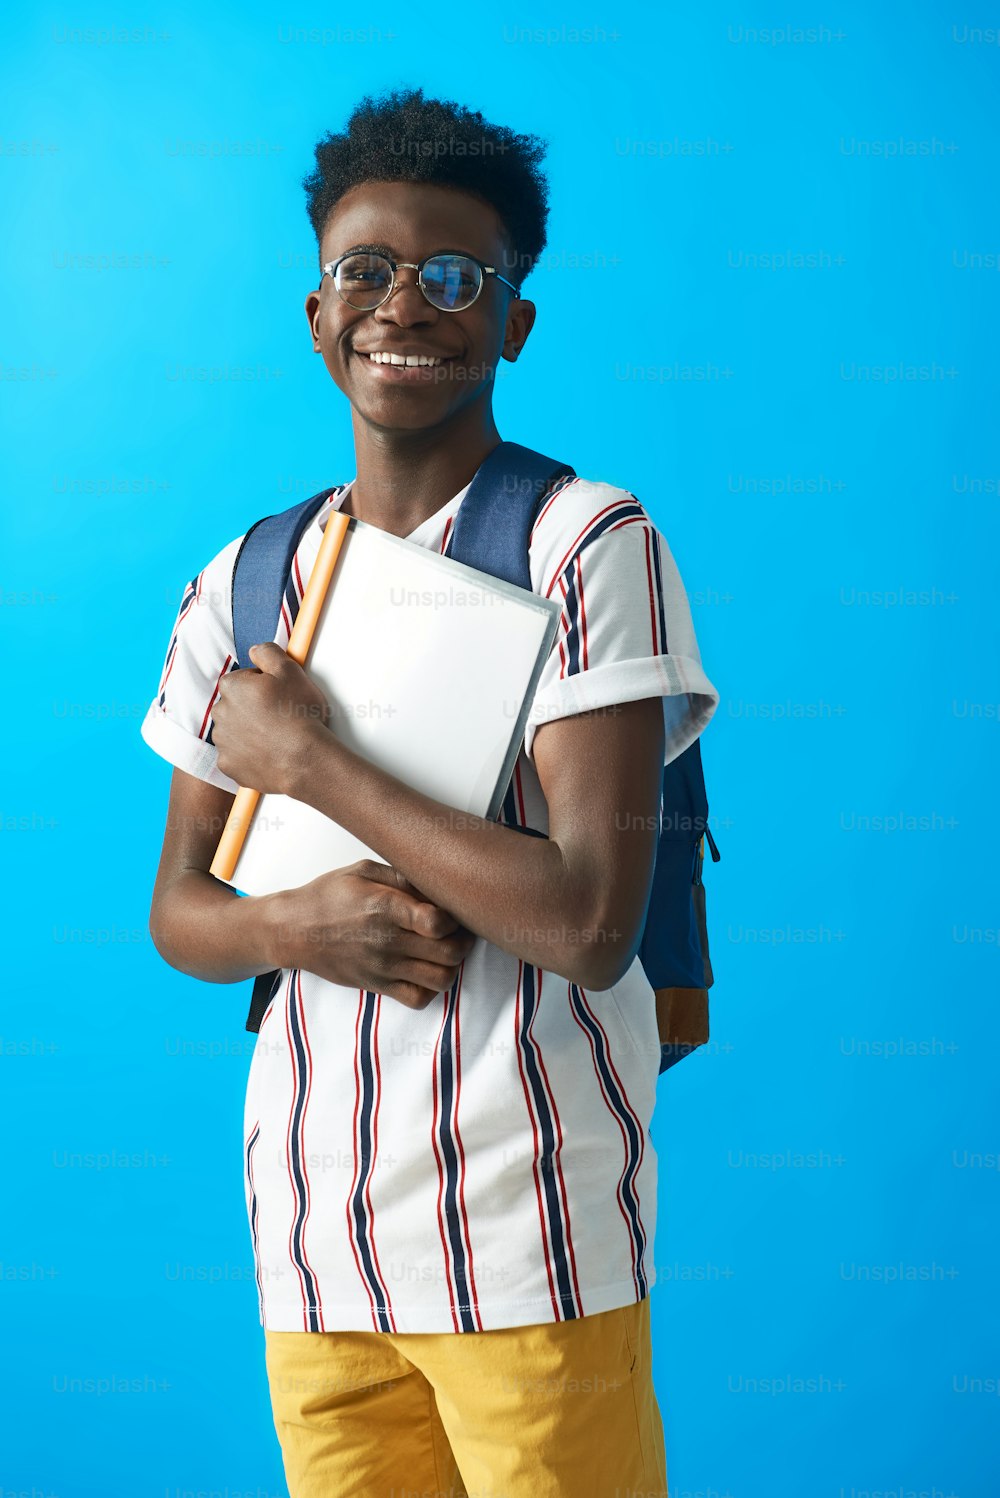 ストライプのTシャツを着てファイルを持つアフリカの若い男の腰のポートレート。青の背景に分離型